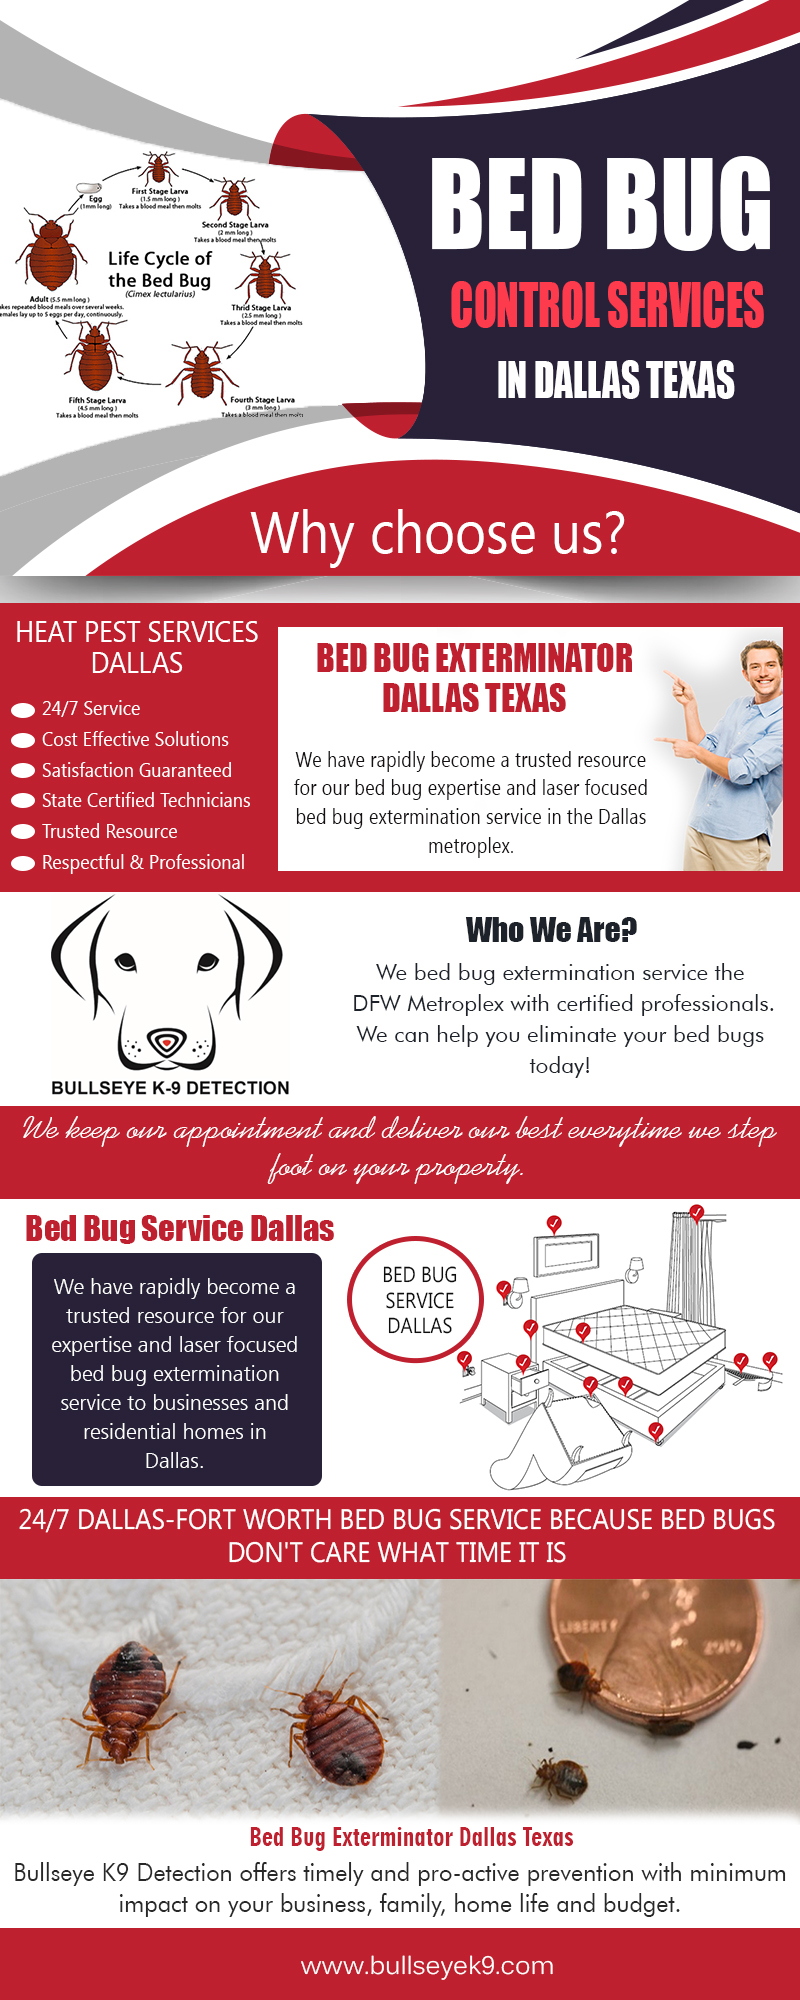 Bed Bug Control Services in Dallas Texas